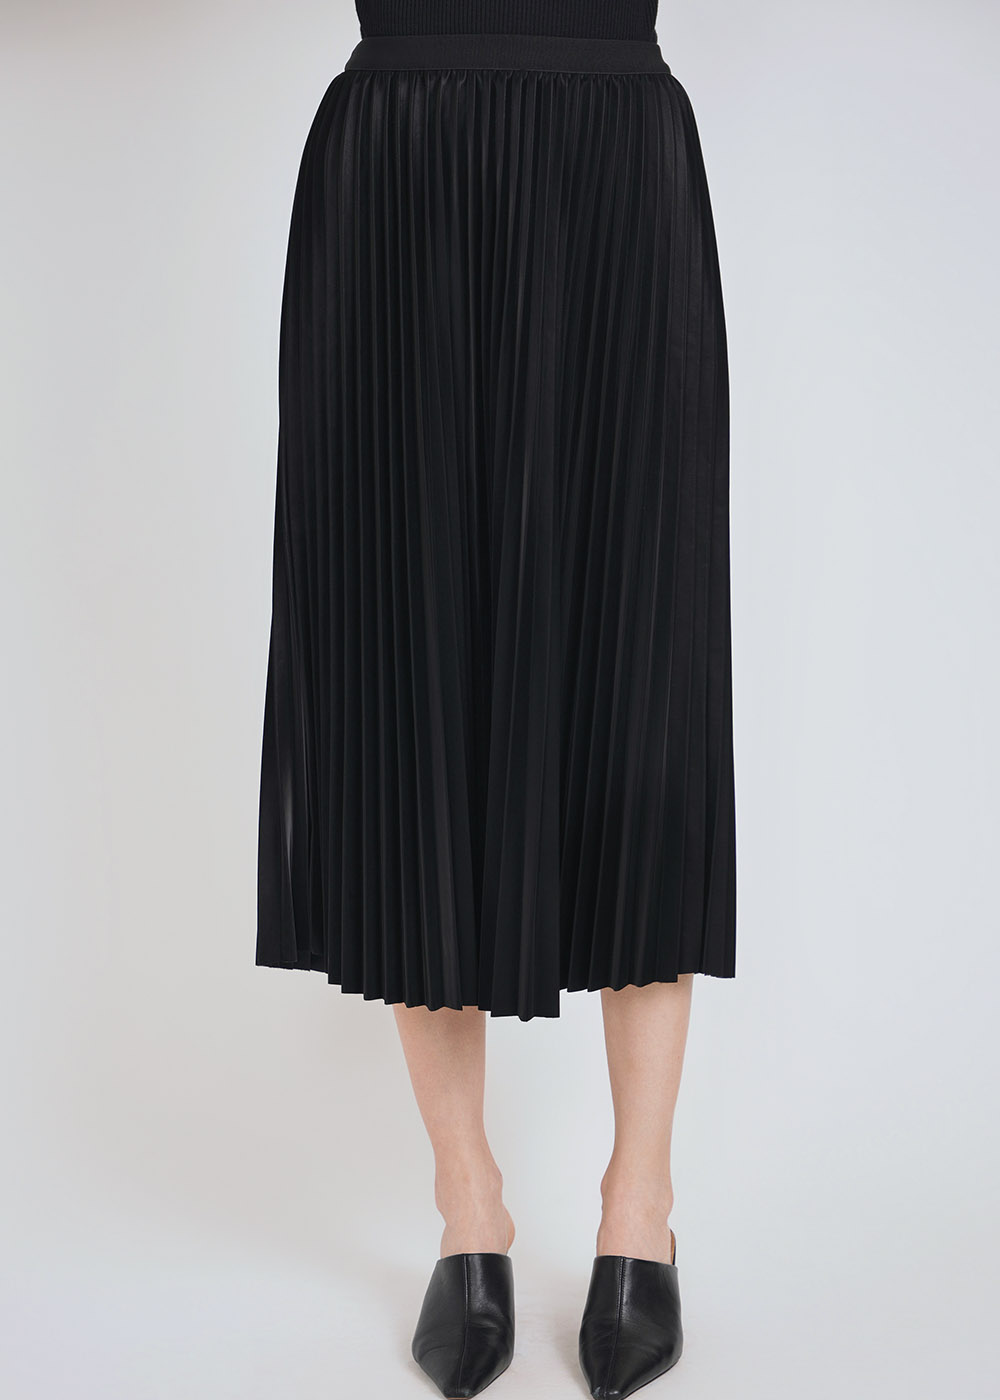 Soft Radiance Black Skirt 32"